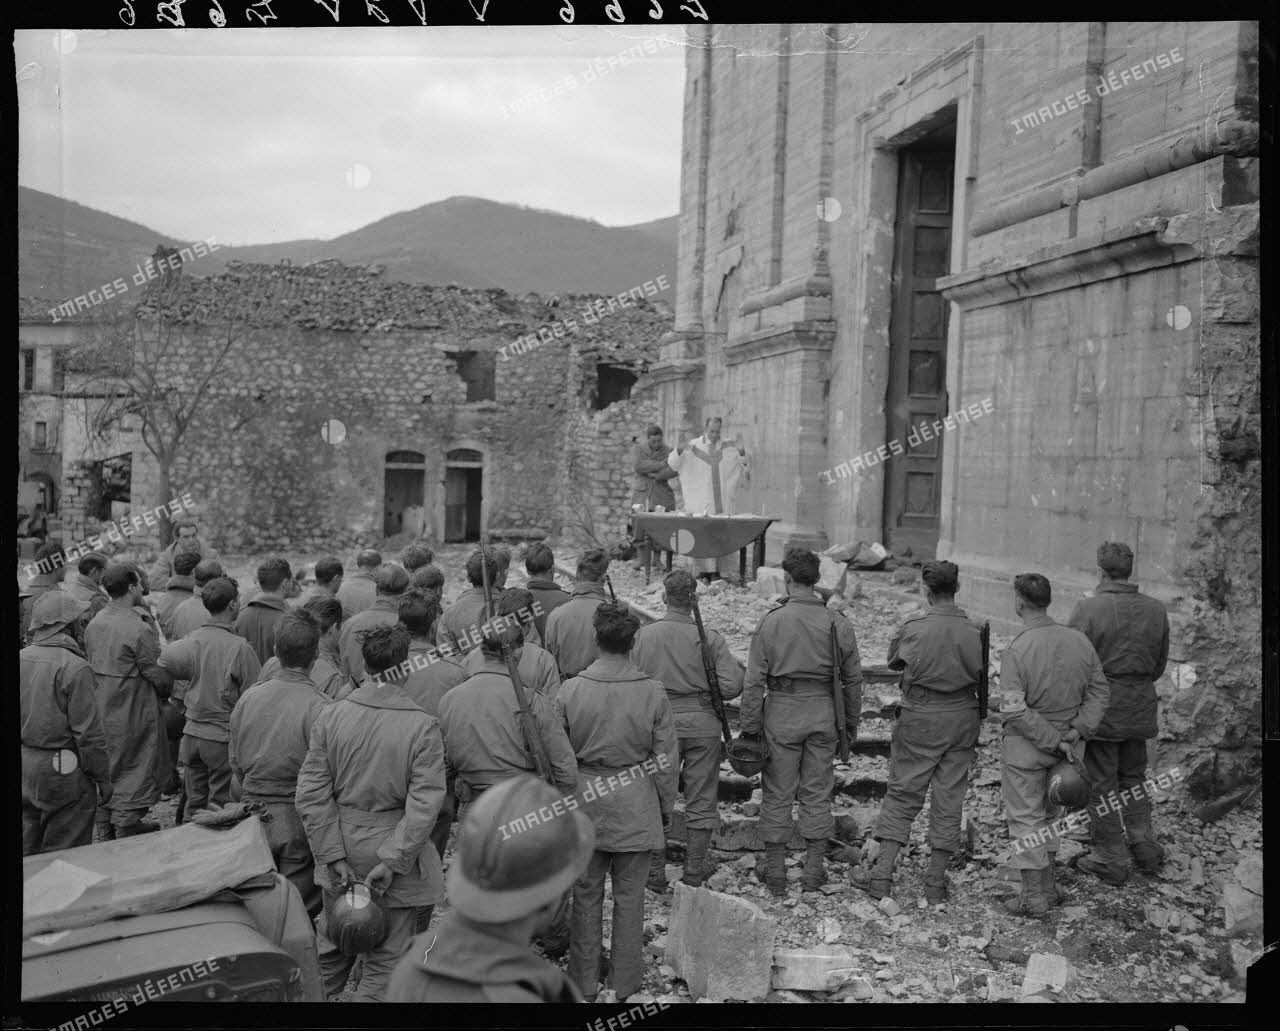 Des tirailleurs du 5e régiment de tirailleurs marocains (RTM) de la 2e division d'infanterie marocaine (DIM) assistent à la messe de Noël, célébrée par un aumônier militaire catholique sur le parvis de l'église d'un village situé à proximité des premières lignes italiennes.